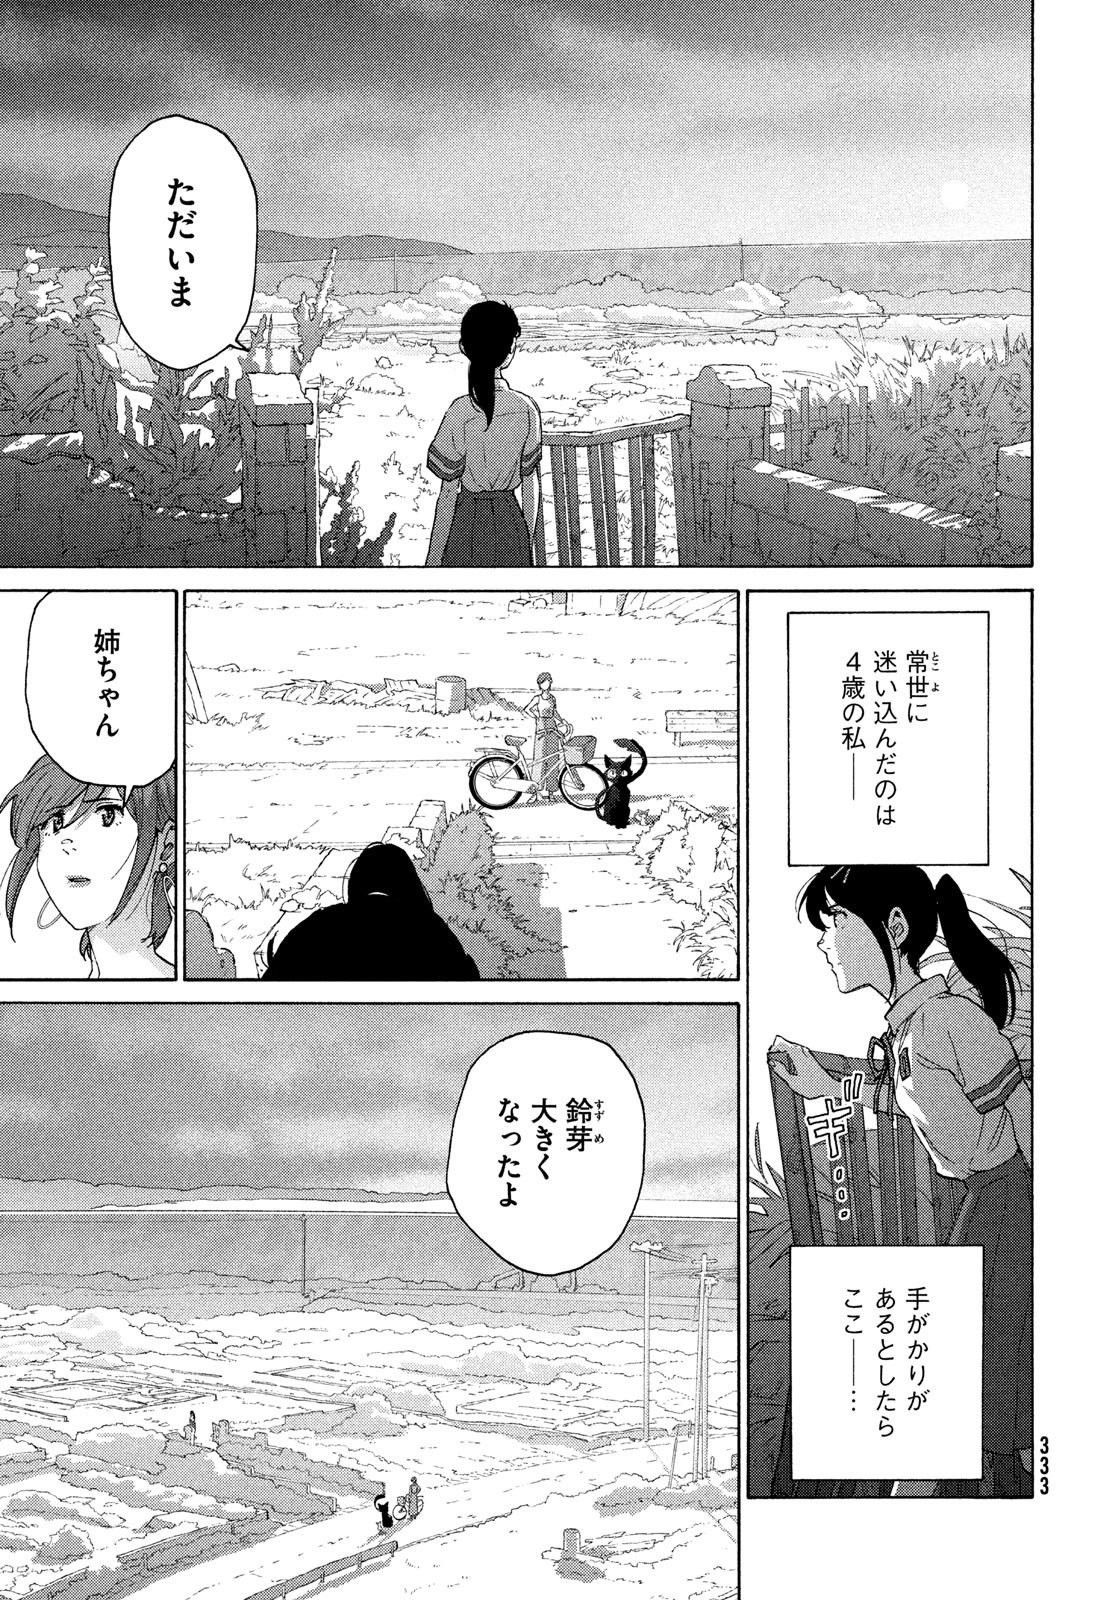 Suzume no Tojimari - Chapter 13 - Page 3